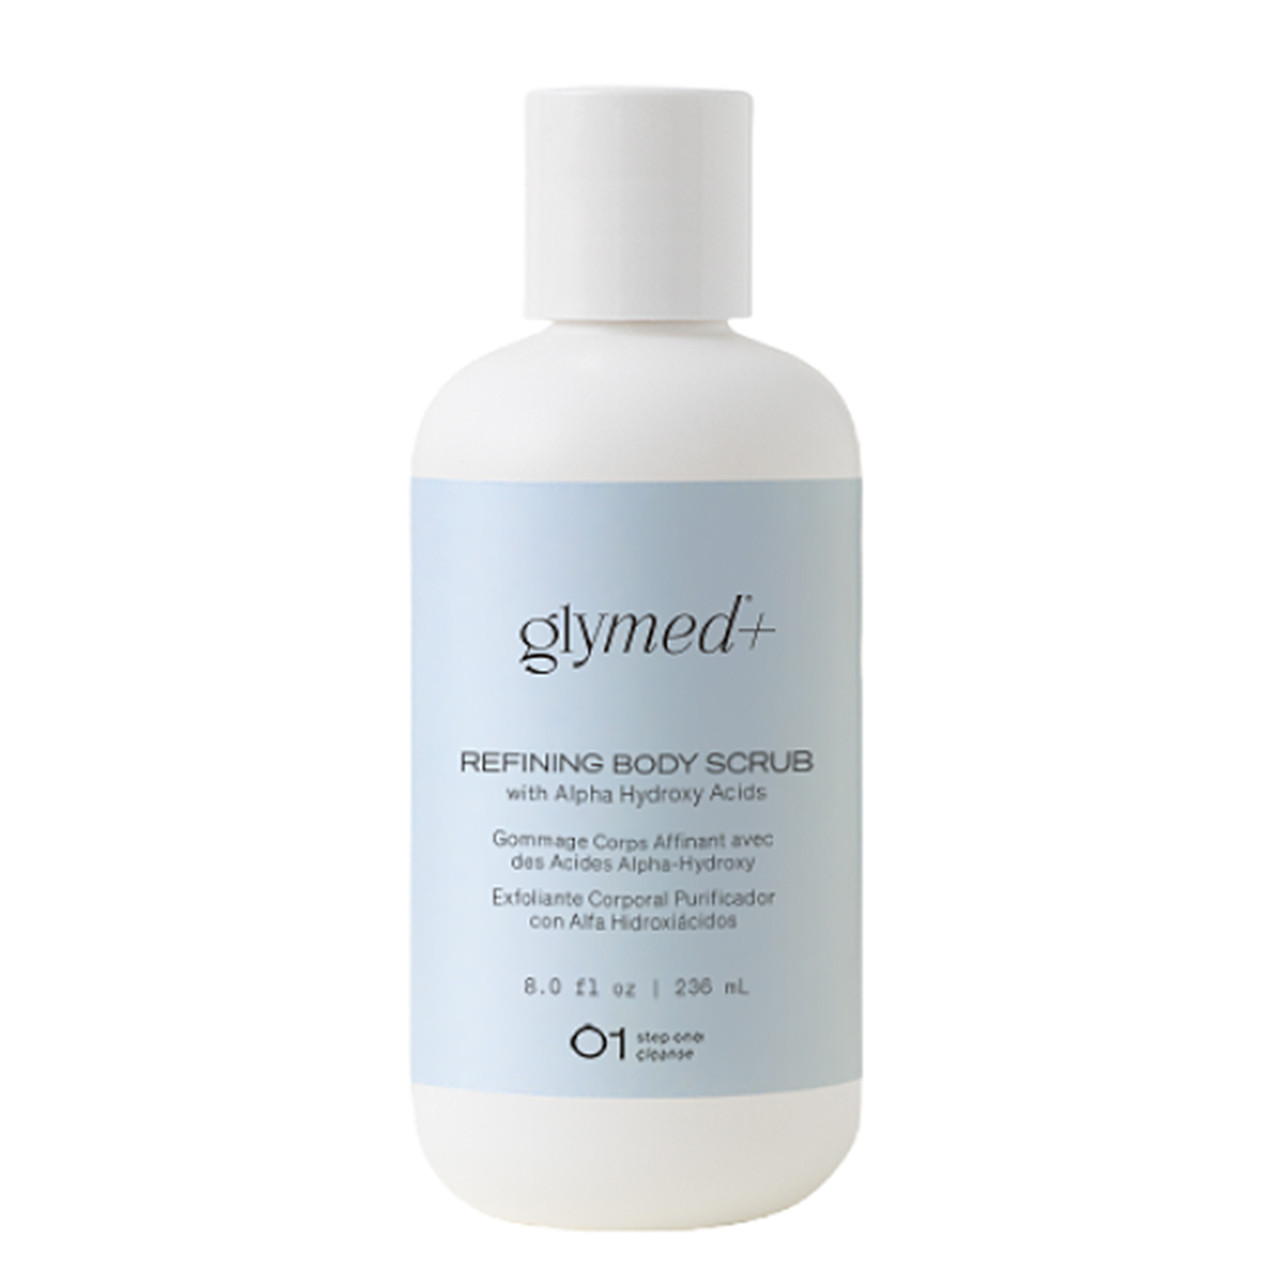 Glymed Plus Refining Body Scrub with Alpha Hydroxy Acids - 8 oz